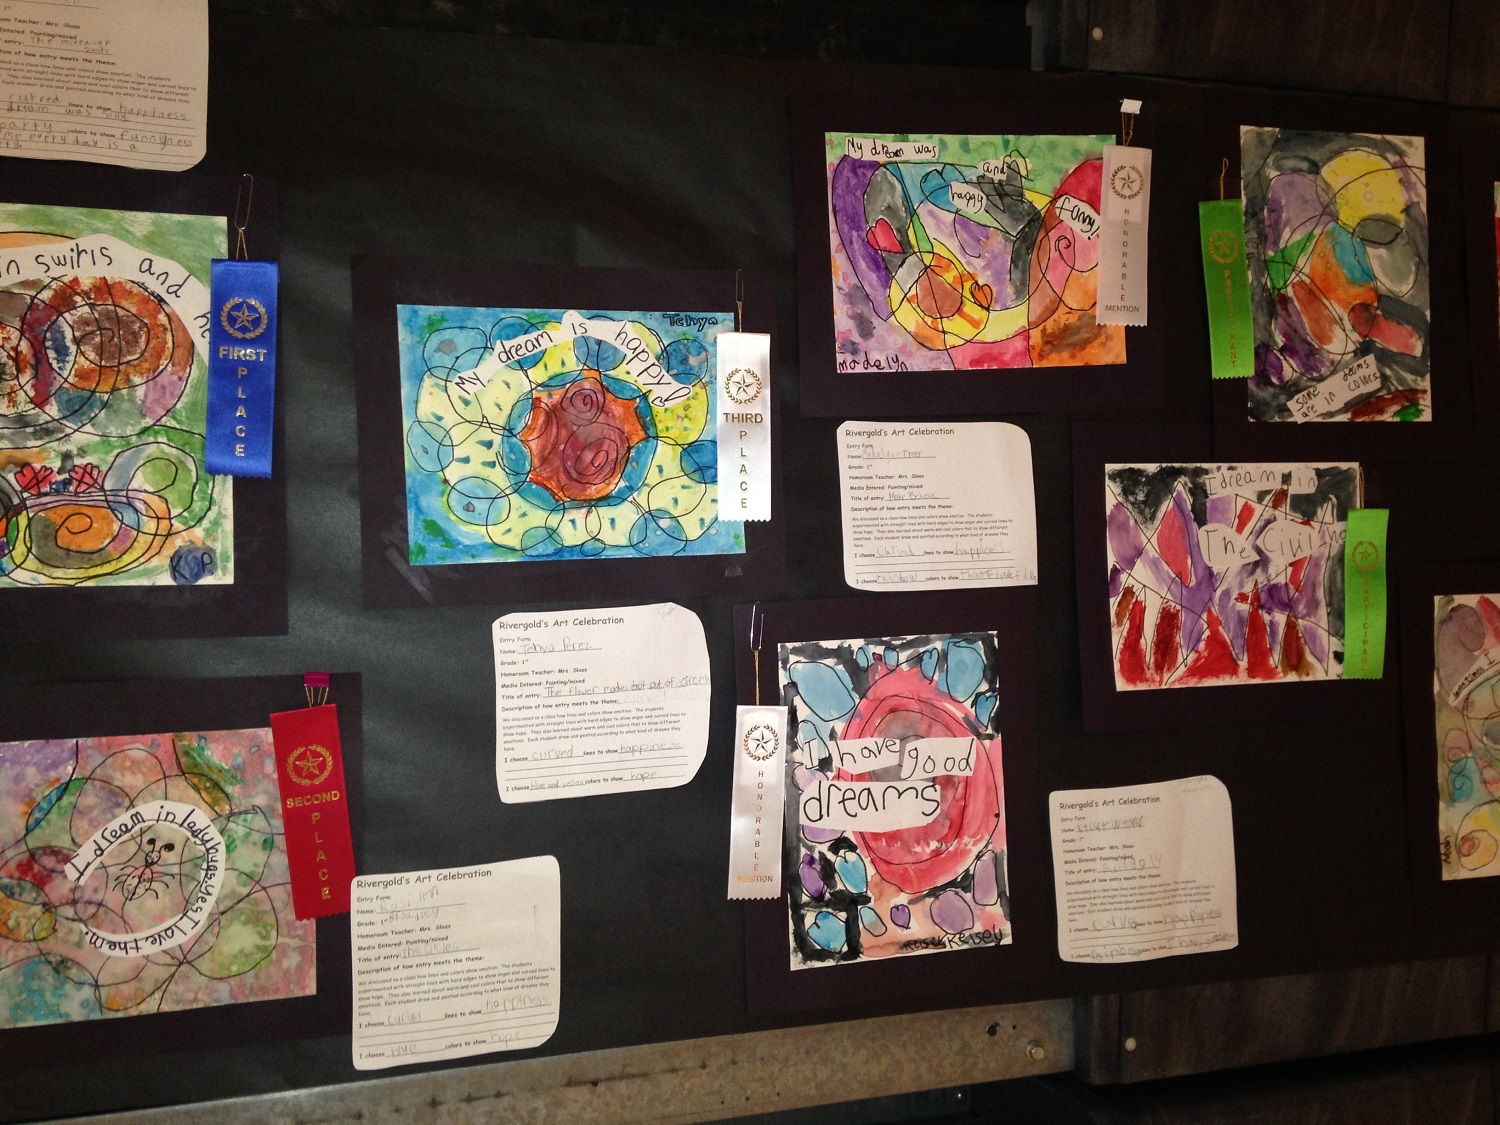 Rivergold School art celebration - Dreams - courtesy of Rivergold Jessica Medrano 2014